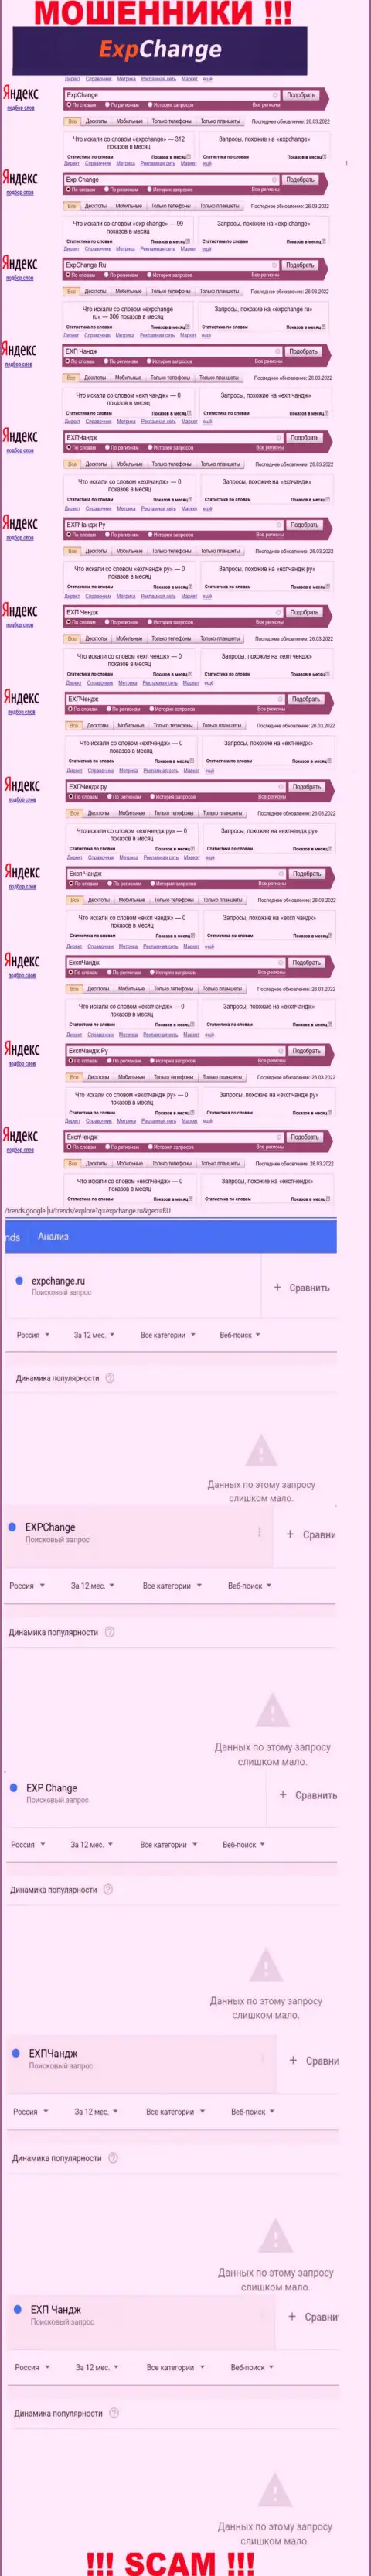 Число онлайн-запросов посетителями сети Интернет инфы о мошенниках ExpChange Ru